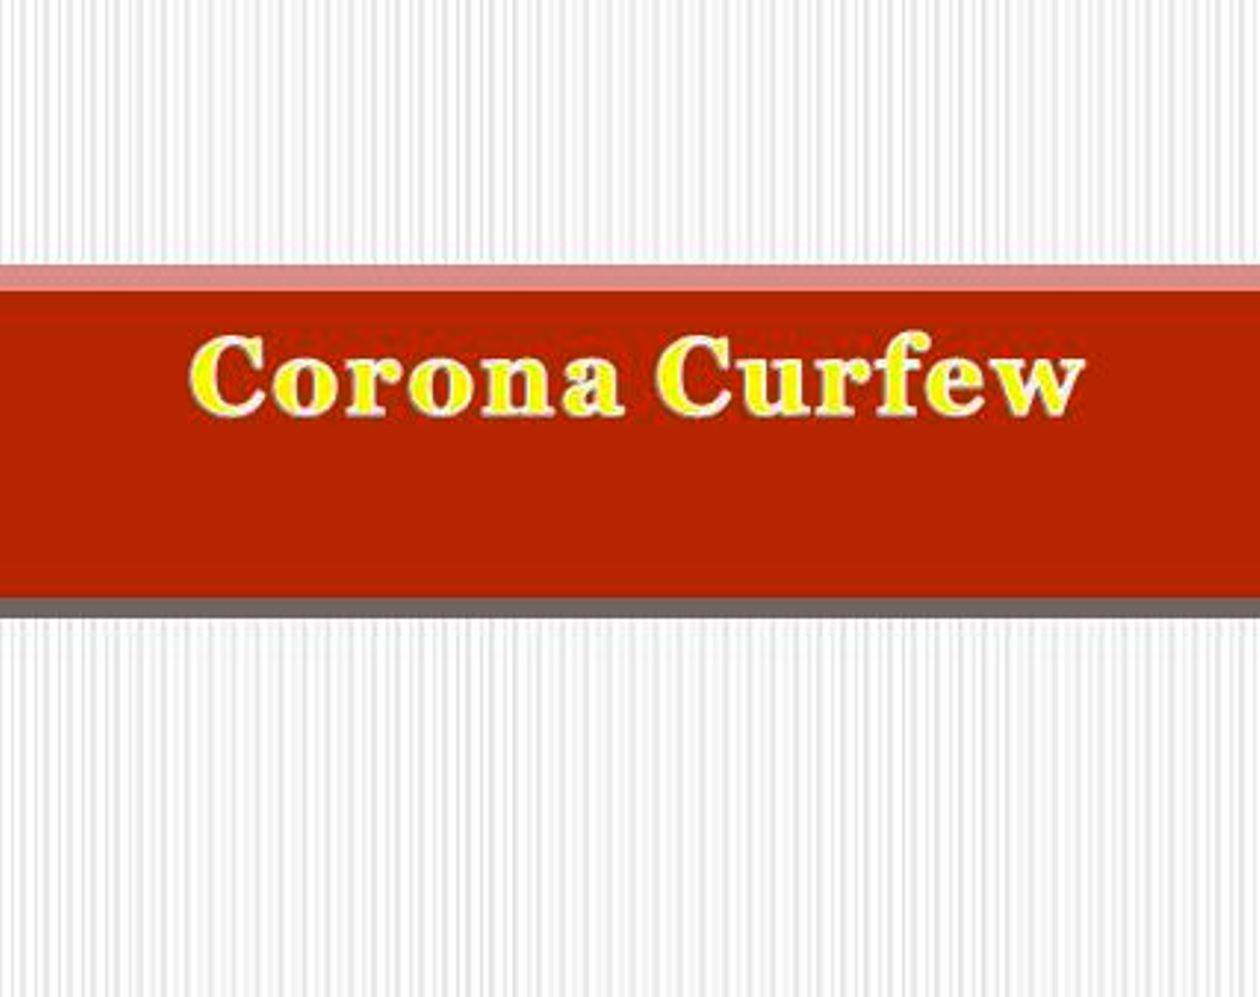 कोरोना कर्फ्यू 29-08-2020 शहर में विभिन्न स्थानों पर लगाईं निषेधाज्ञा